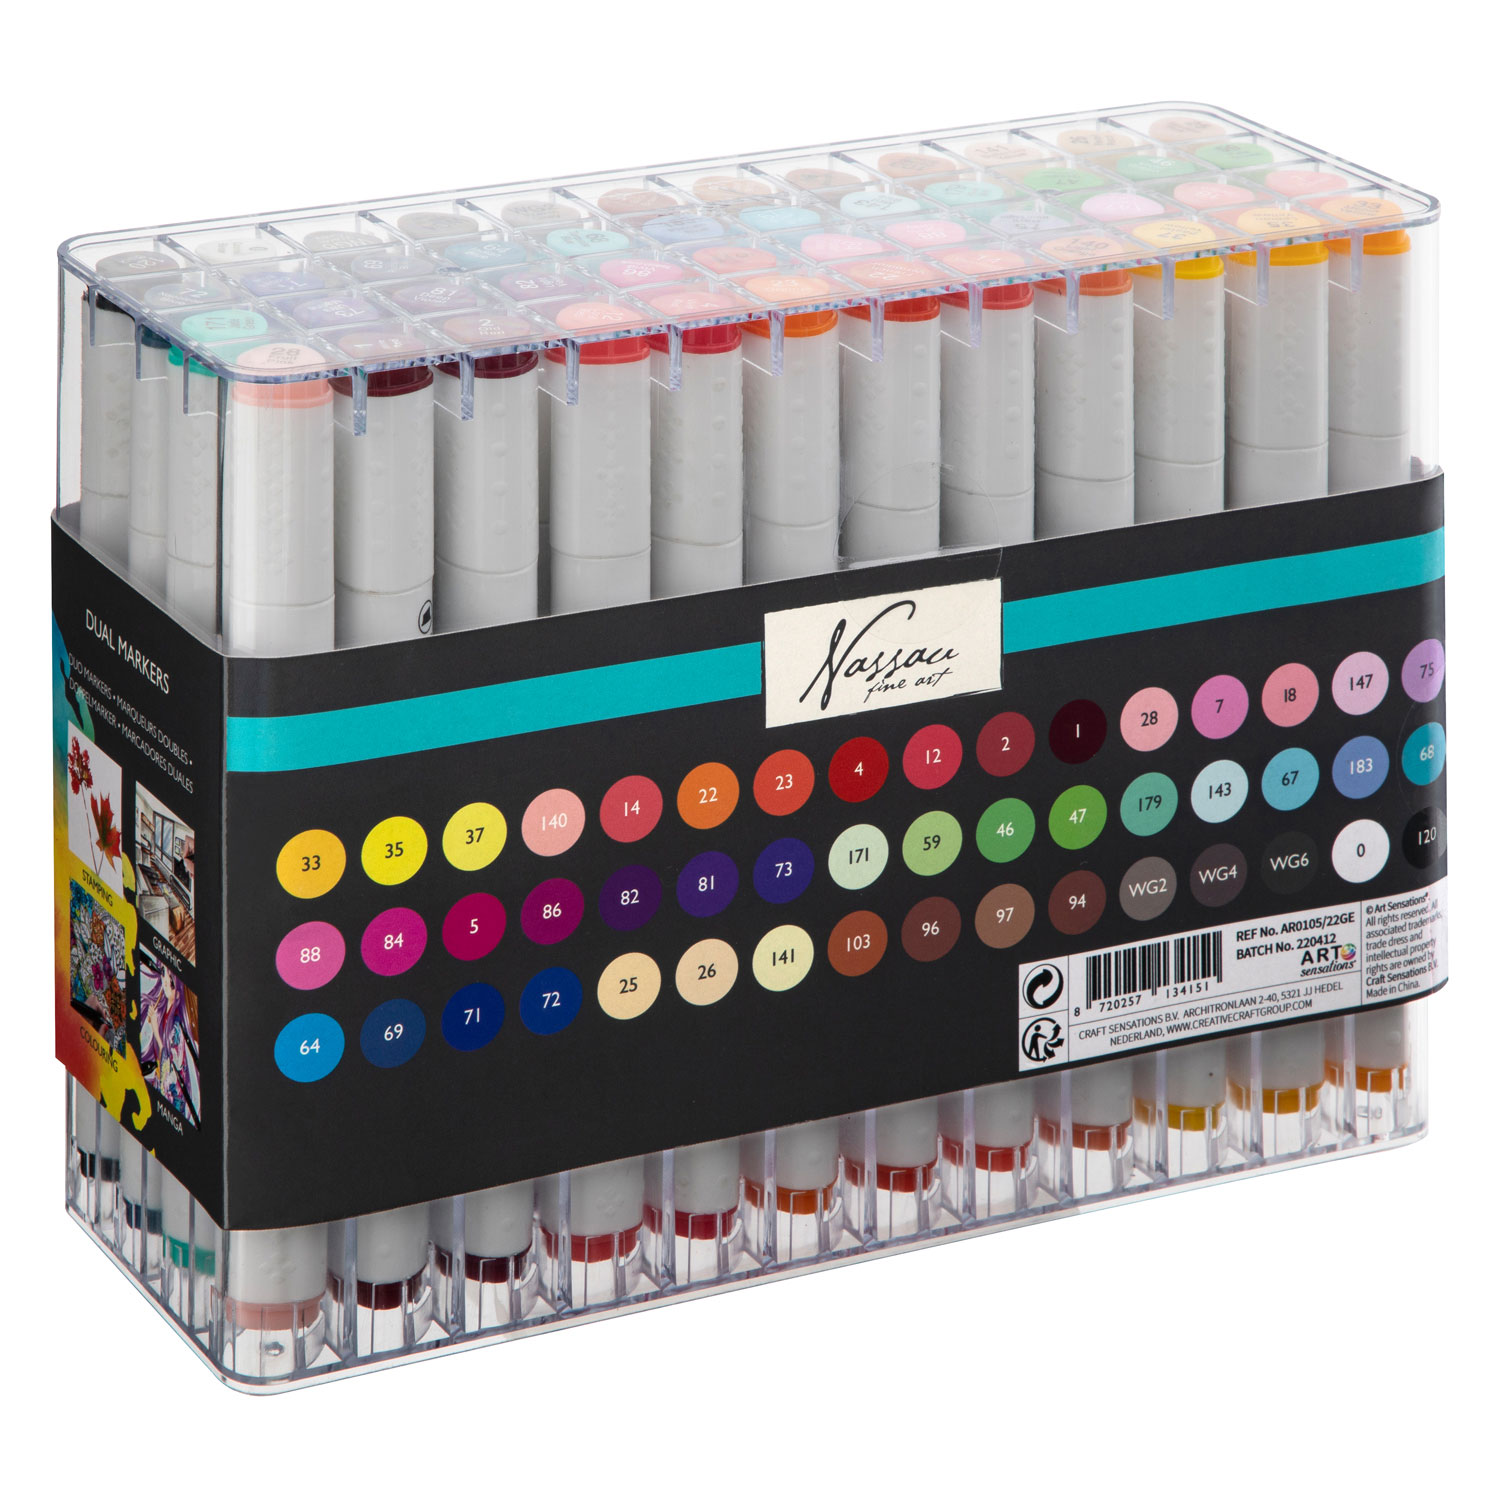 Nylea 15 Pack Dual Tip Brush Marker Pens ArtWerk [OPEN BOX